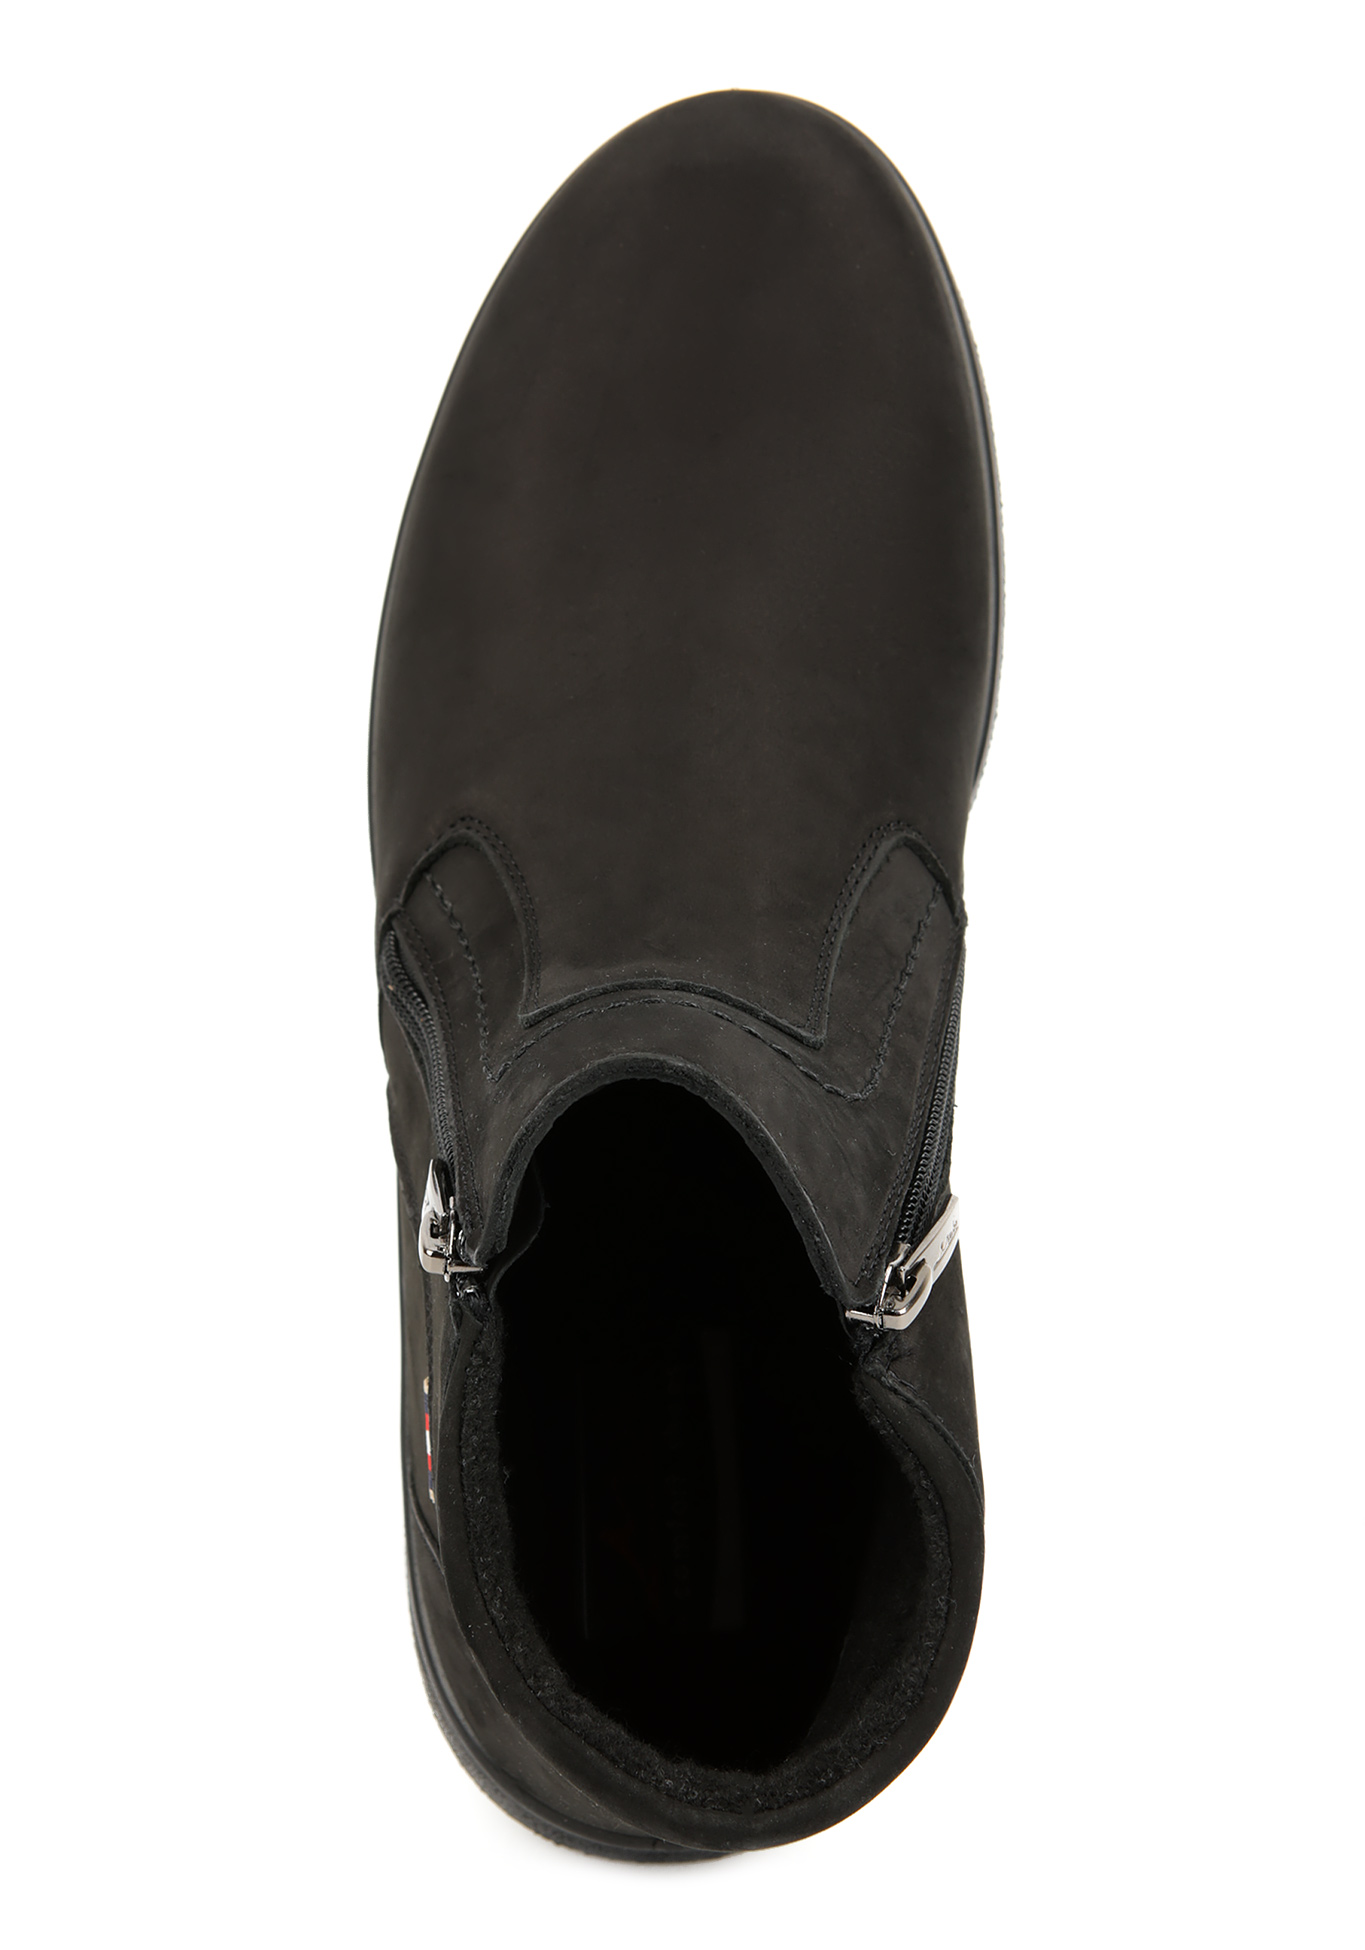 Ботинки мужские "Бернардо" Marko, размер 43, цвет черный - фото 5